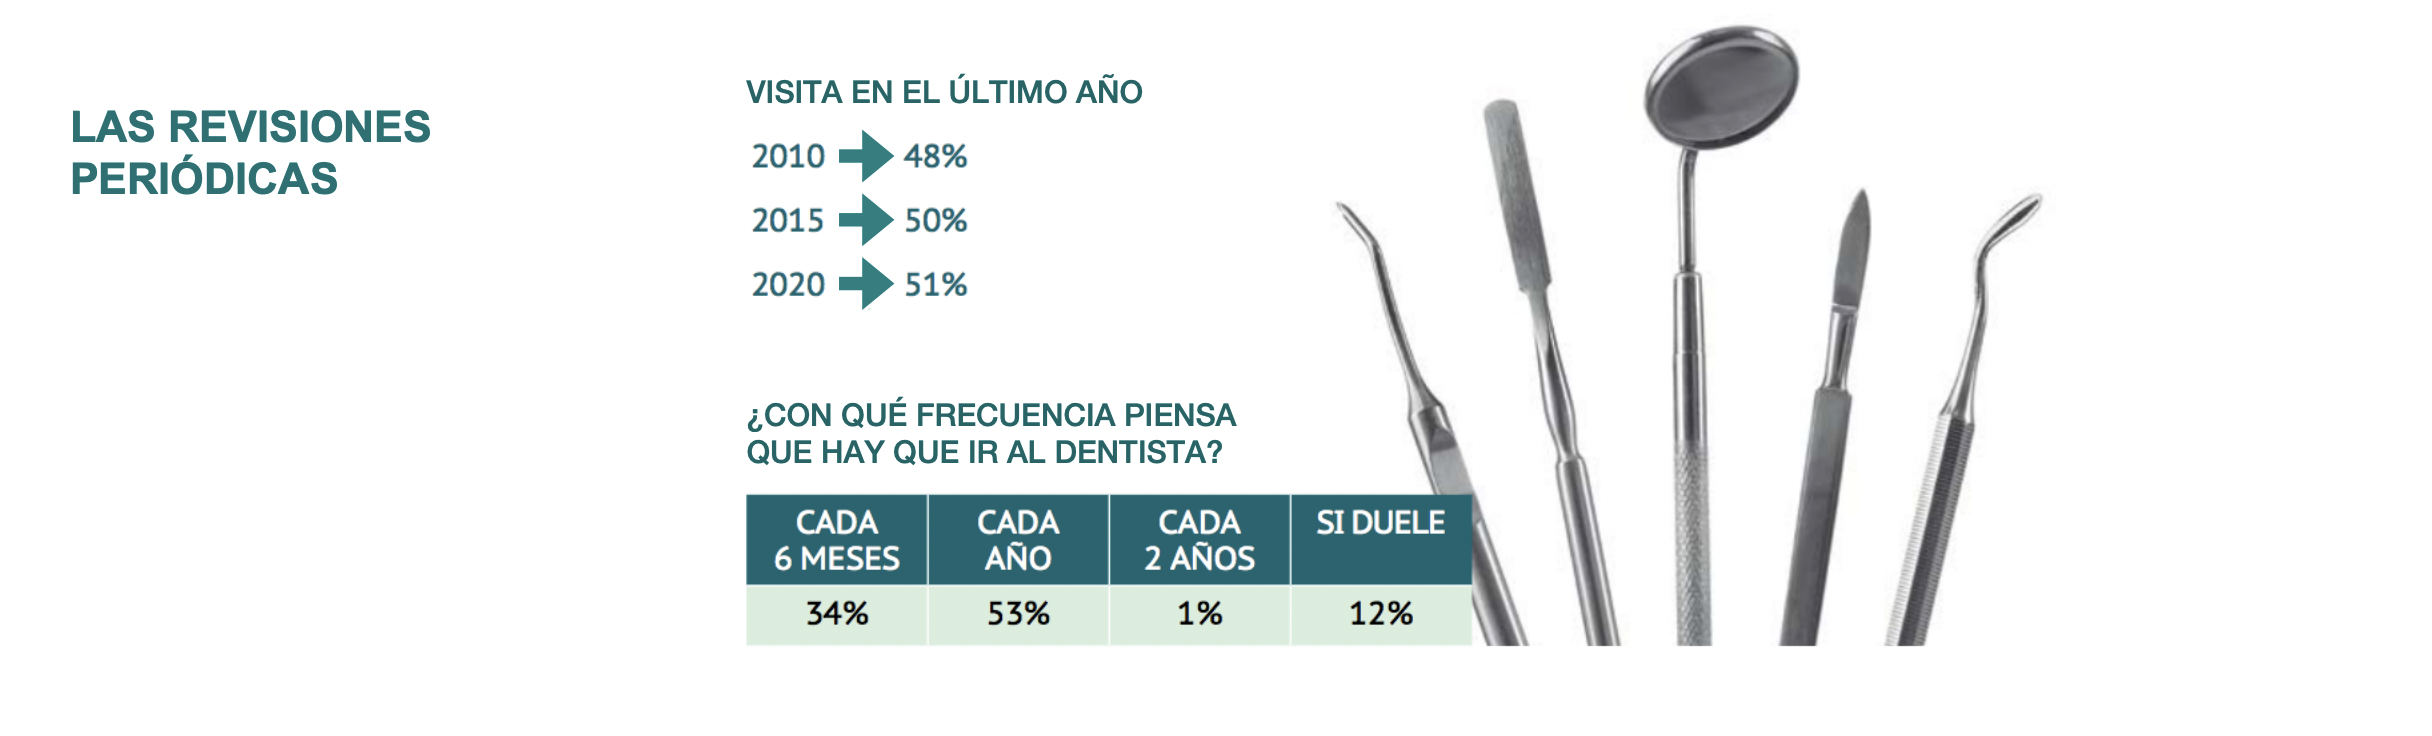 Infografía revisiones dentista en España